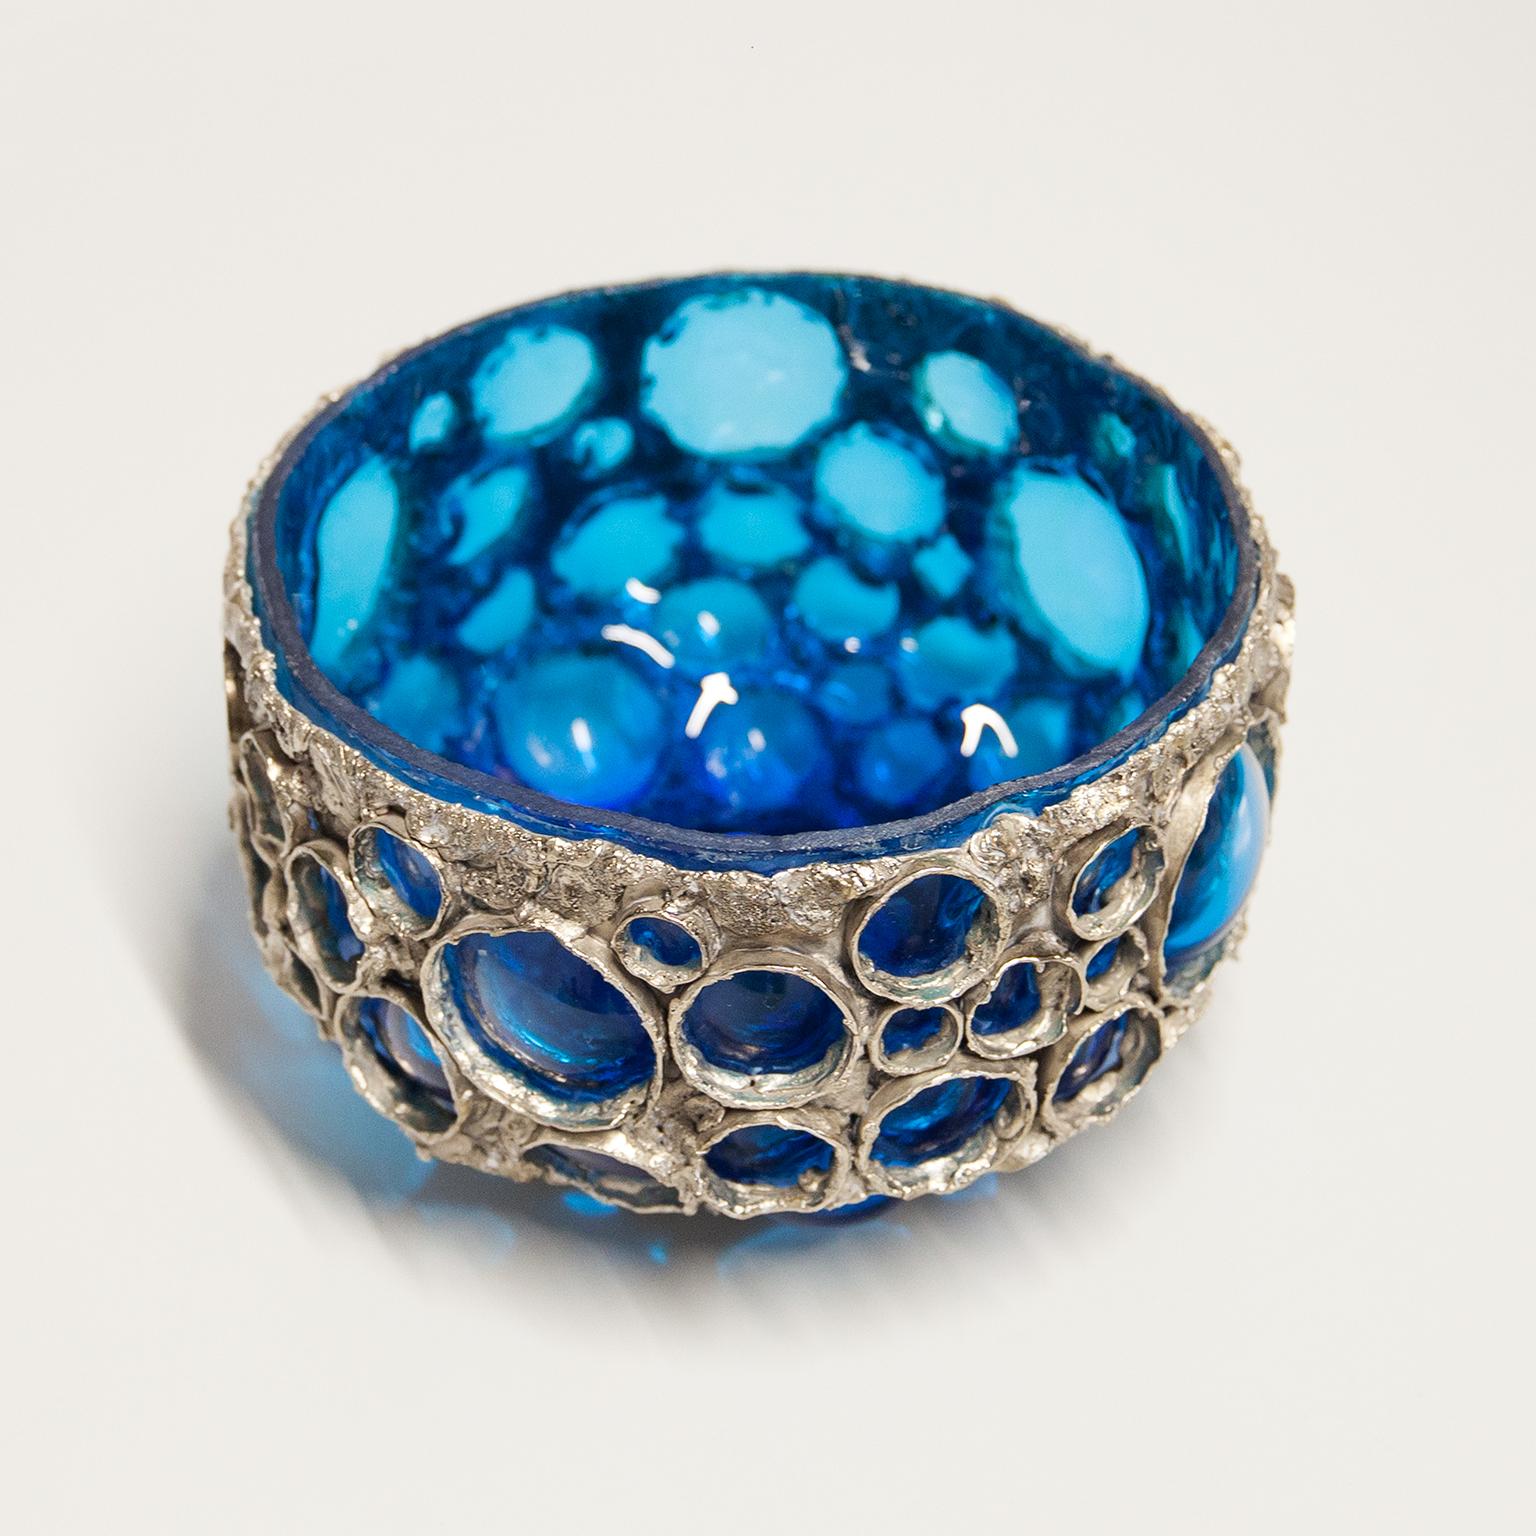 Schale aus geblasenem Glas und geschmolzenem Metall von Marcello Fantoni und Gian Paolo. Organische, runde Form aus blauem Glas mit Akzenten aus kaltlackiertem Metall, auf der Unterseite signiert.